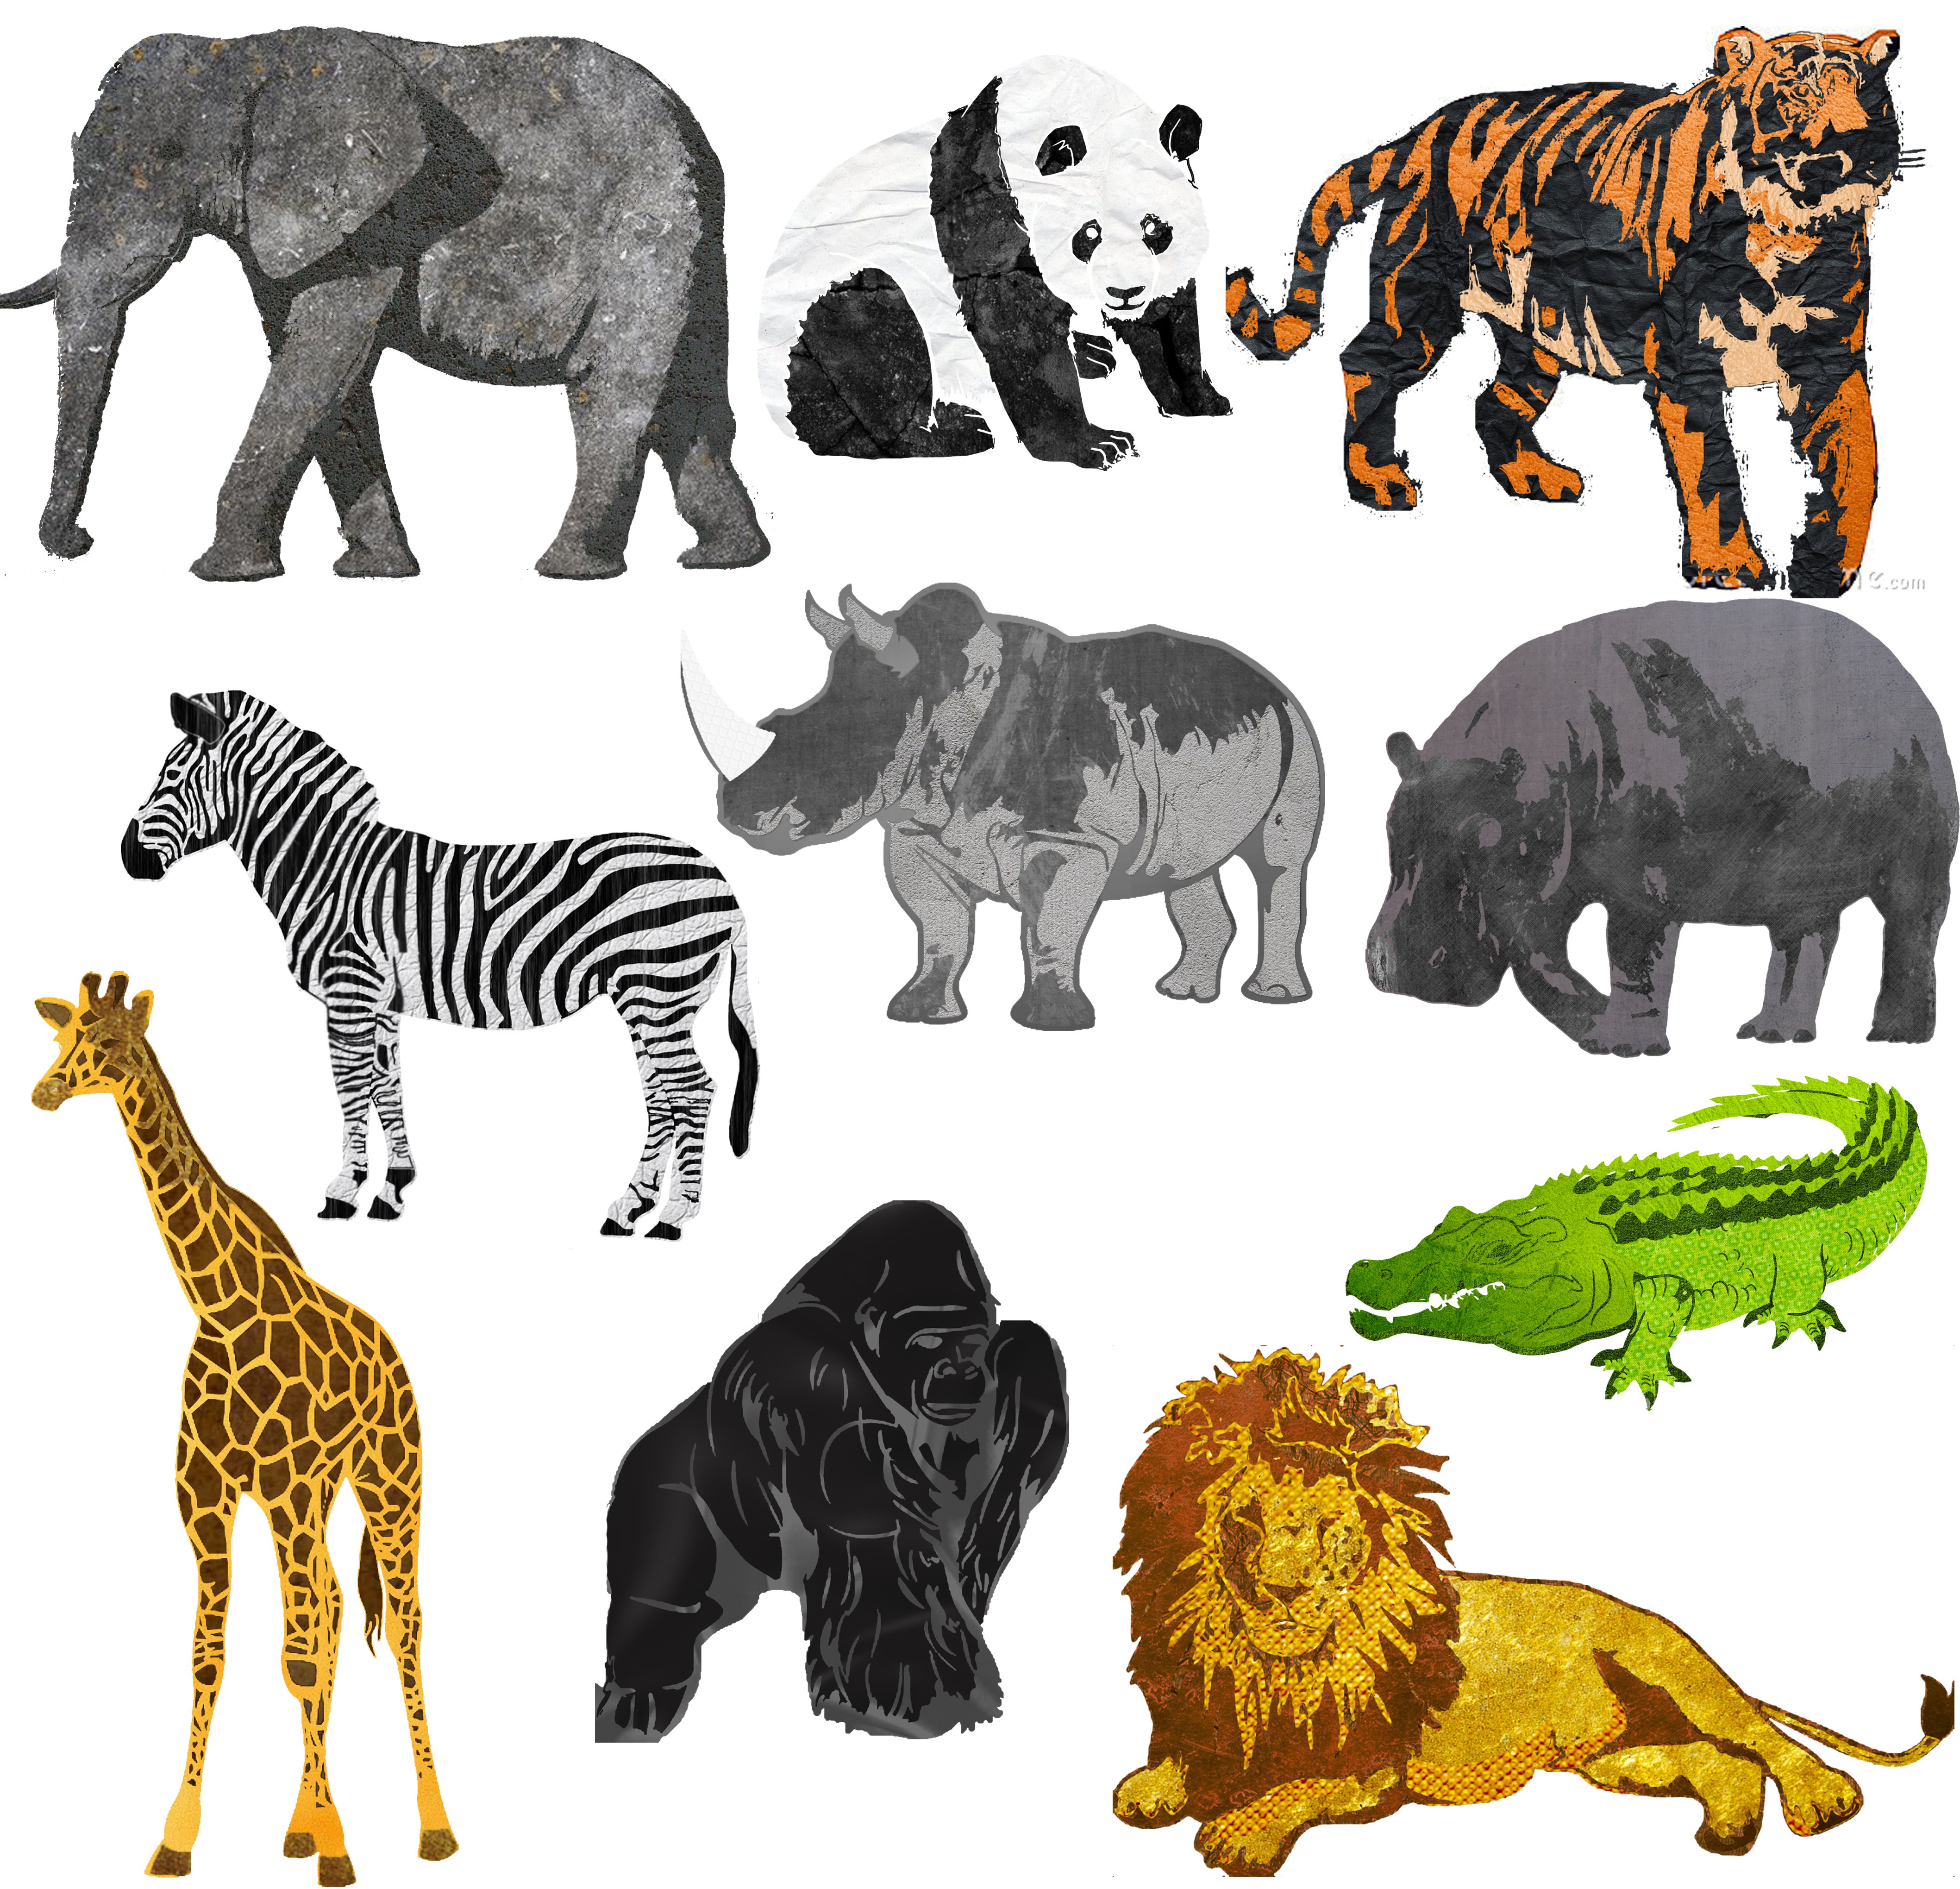 Common animal. Африканские животные. Множество животных. Изображения животных для детей. Рисунки животных для детей цветные.